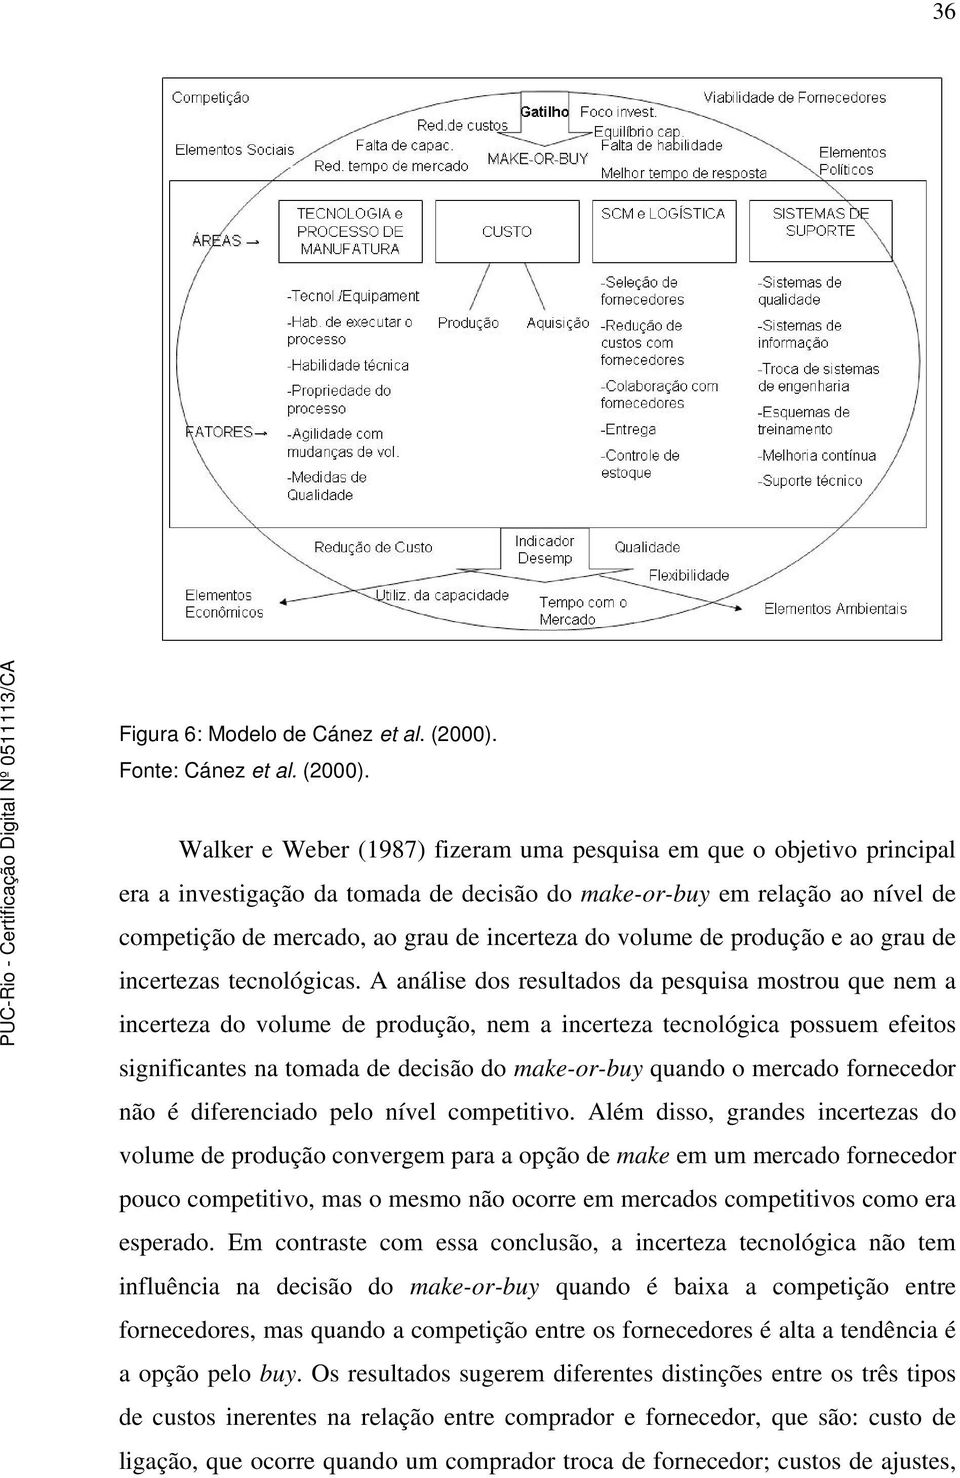 Walker e Weber (1987) fizeram uma pesquisa em que o objetivo principal era a investigação da tomada de decisão do make-or-buy em relação ao nível de competição de mercado, ao grau de incerteza do